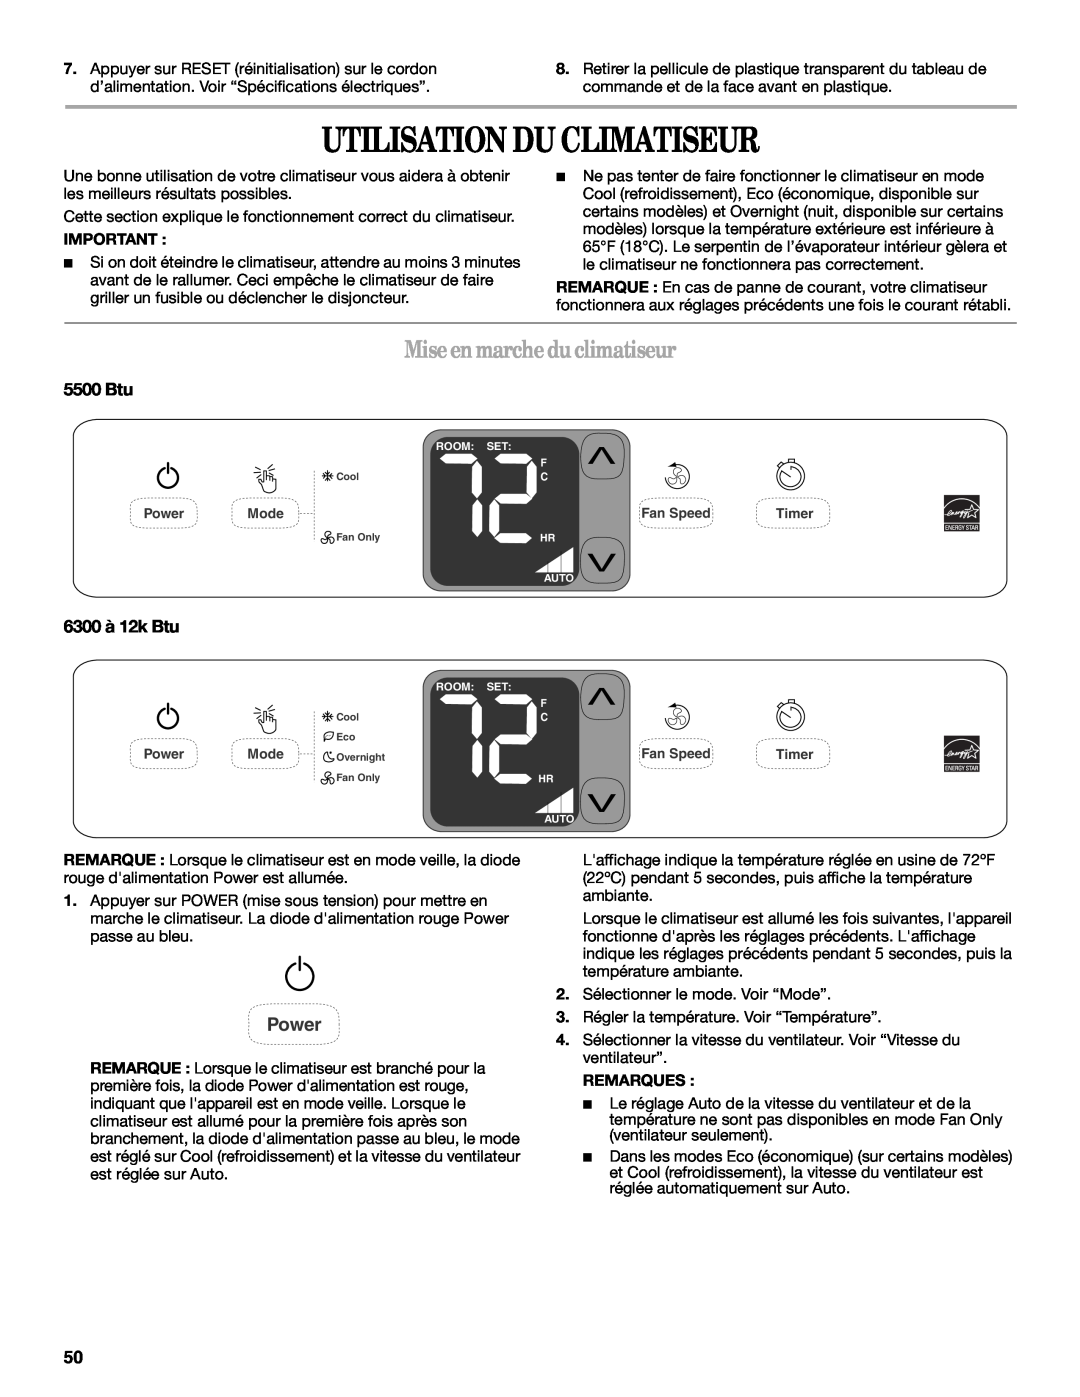 Whirlpool 66161279 manual Utilisation Du Climatiseur, Mise en marche du climatiseur, 6300 à 12k Btu, Power, 5500 Btu 